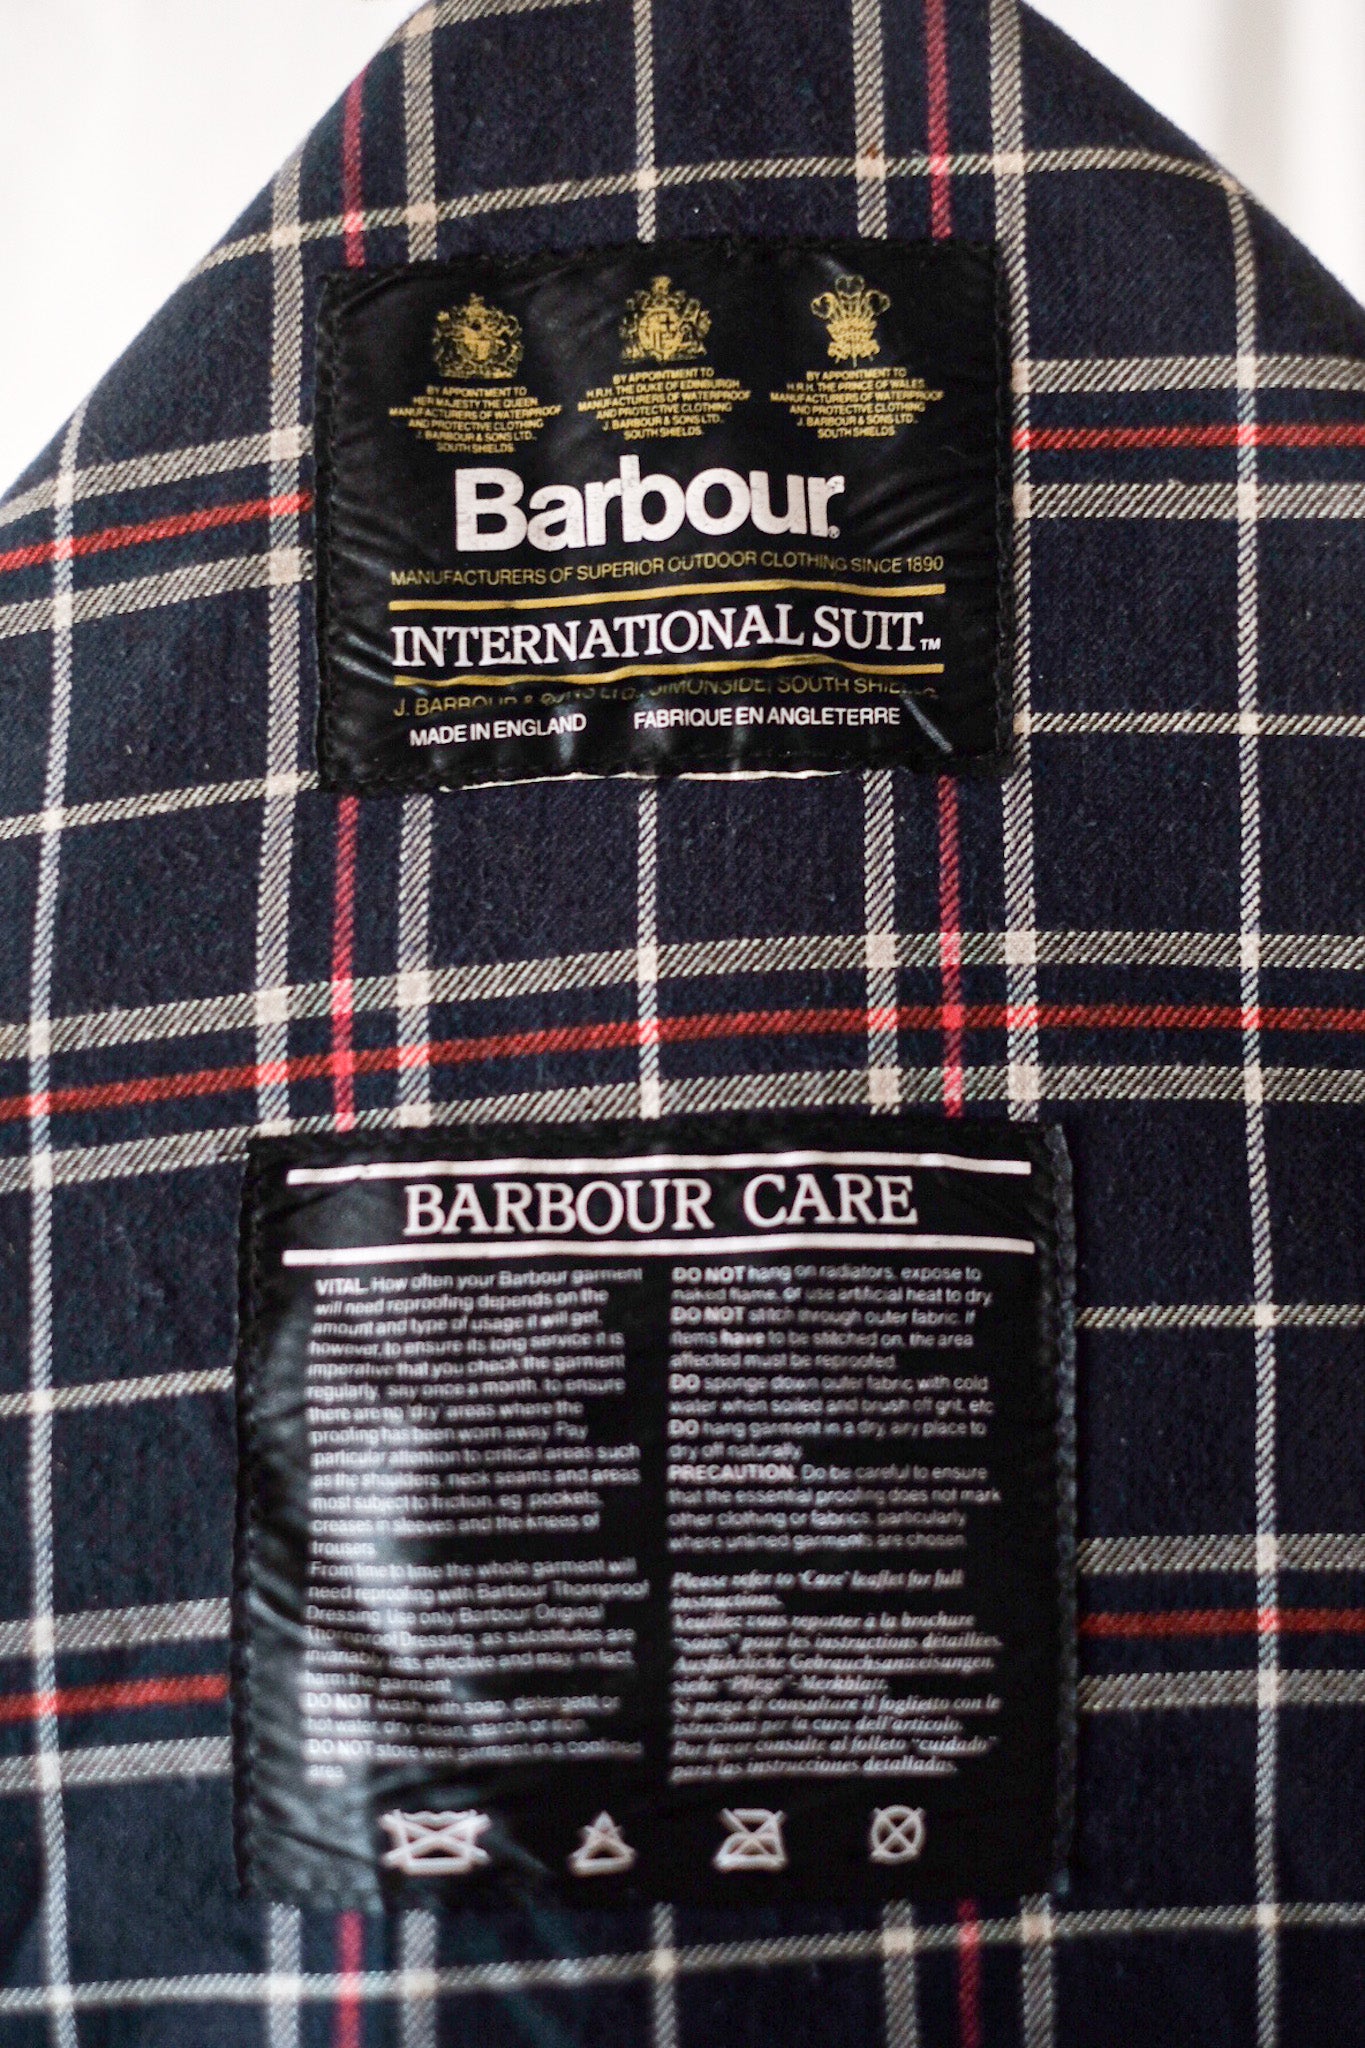 [~ 90's] Barbour vintage "Suit international Modèle OTAN" 3 CREST